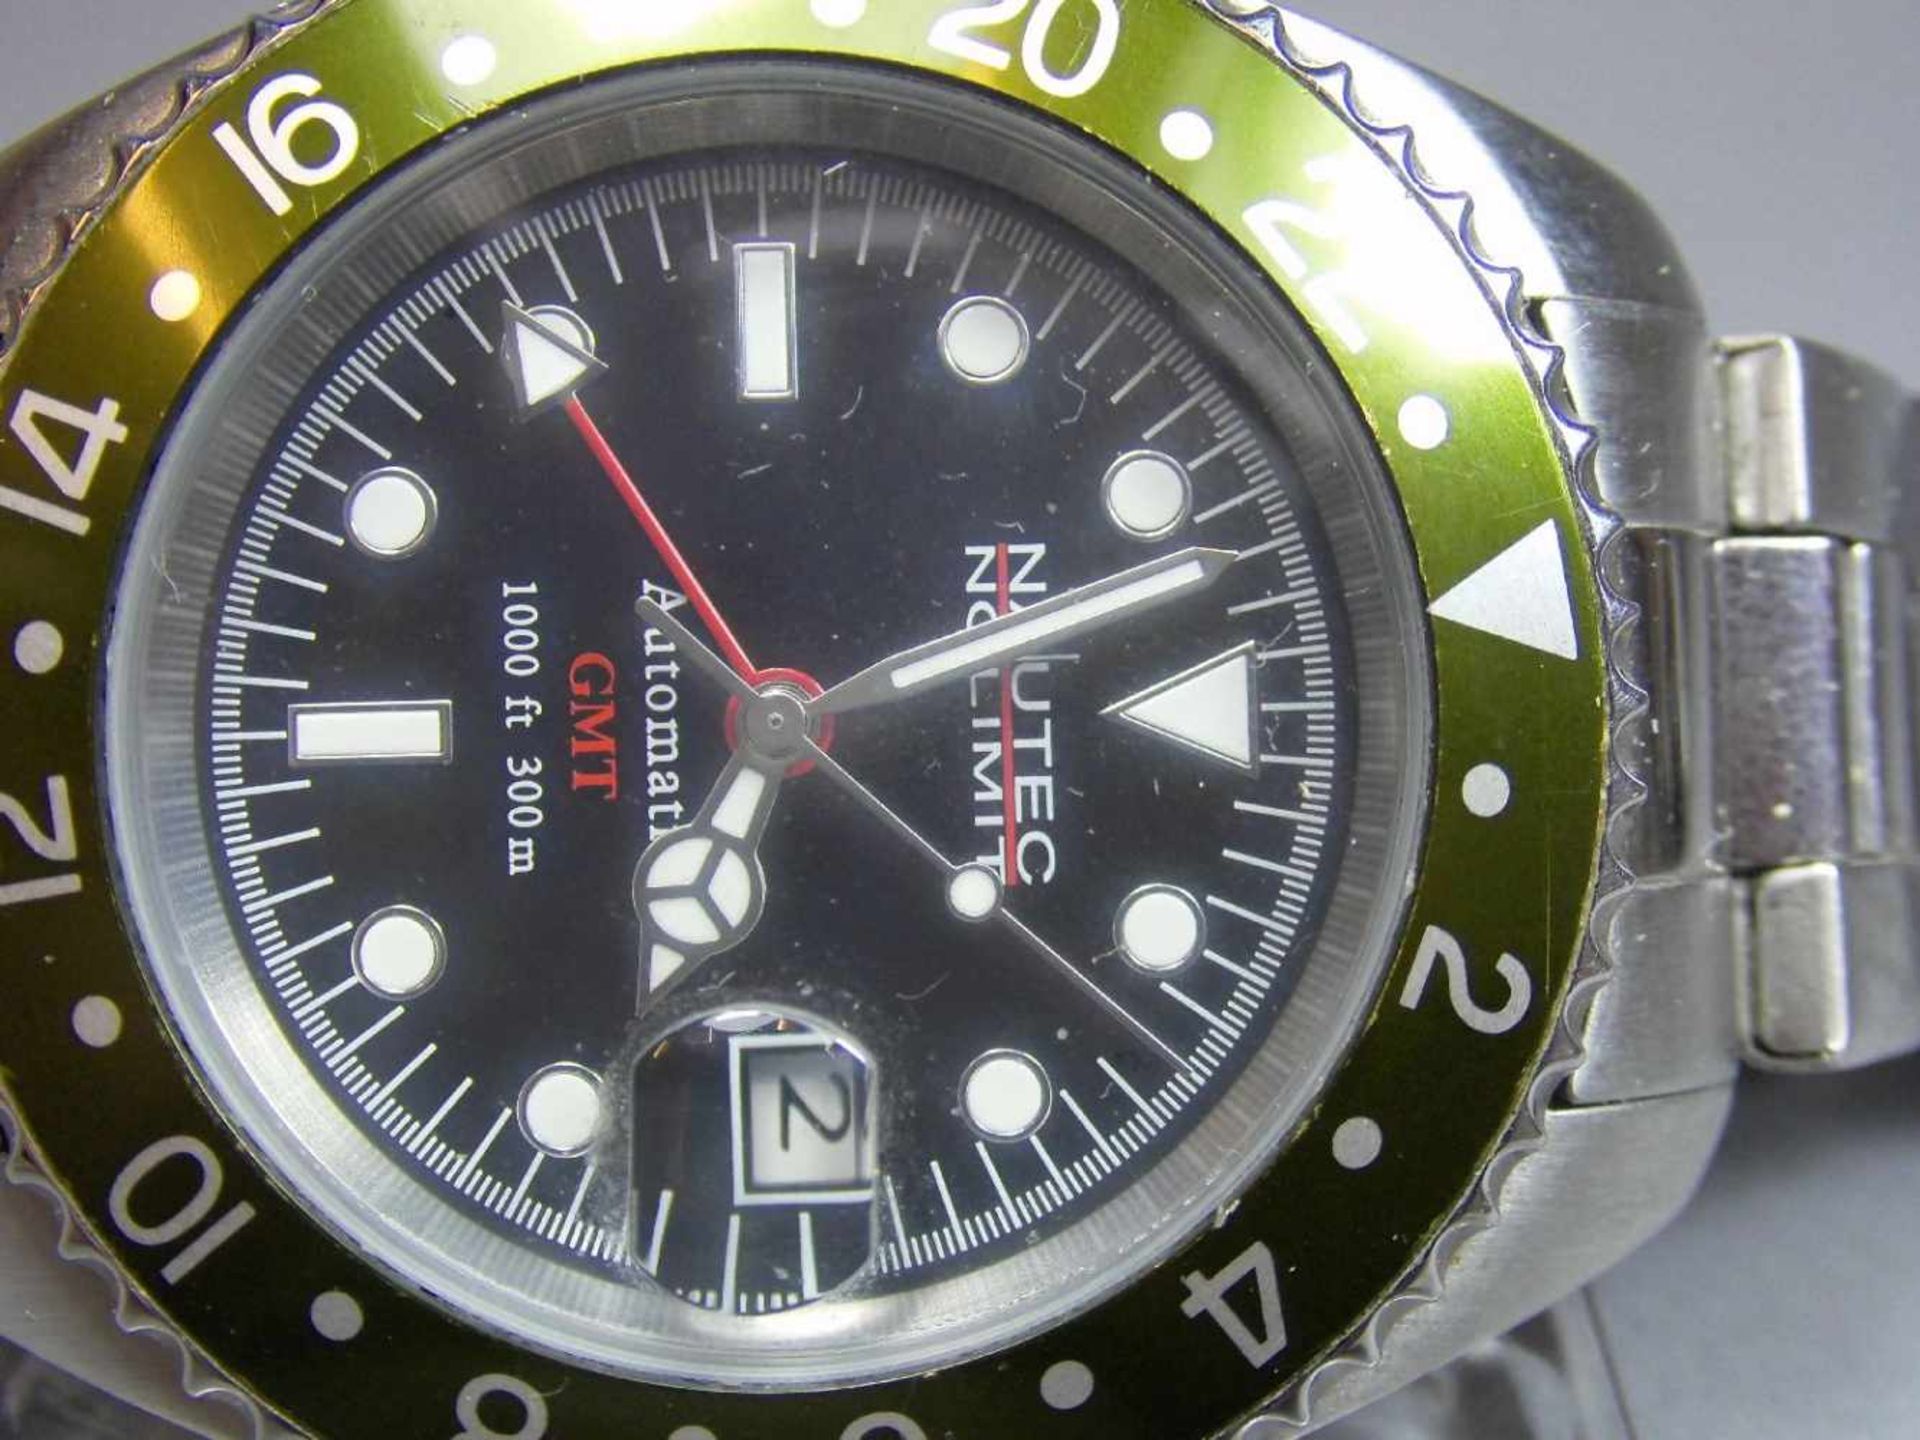 ARMBANDUHR : NAUTEK NO LIMIT GMT / wristwatch, Automatik-Uhr. Rundes Stahlgehäuse mit Gliederarmband - Bild 3 aus 7